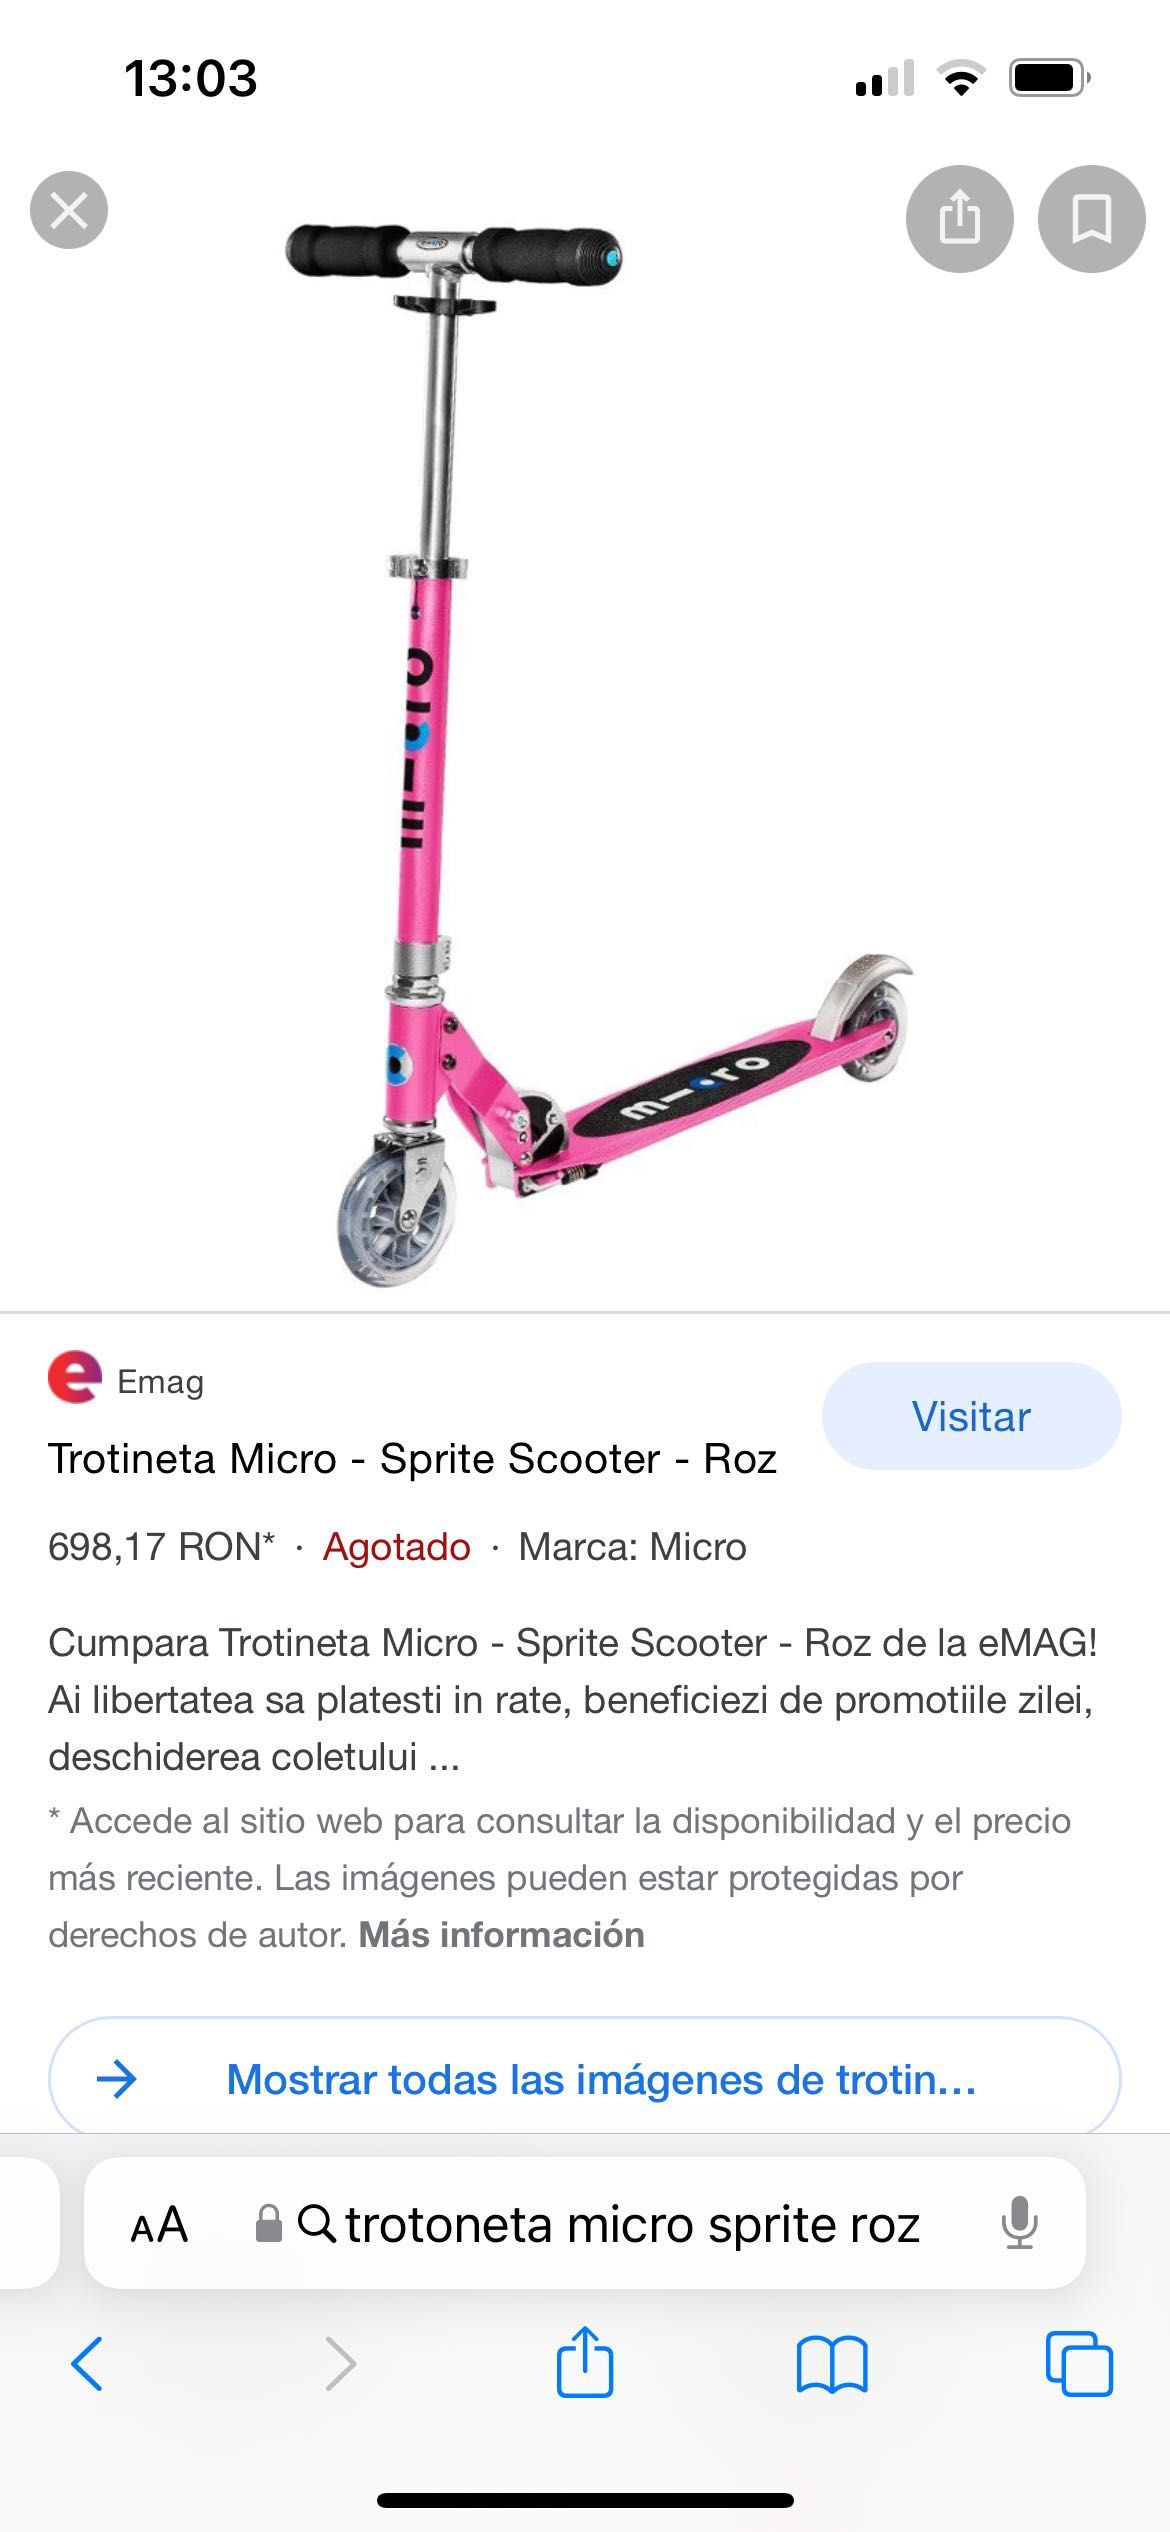 Trotineta Micro - Sprite Scooter - Roz